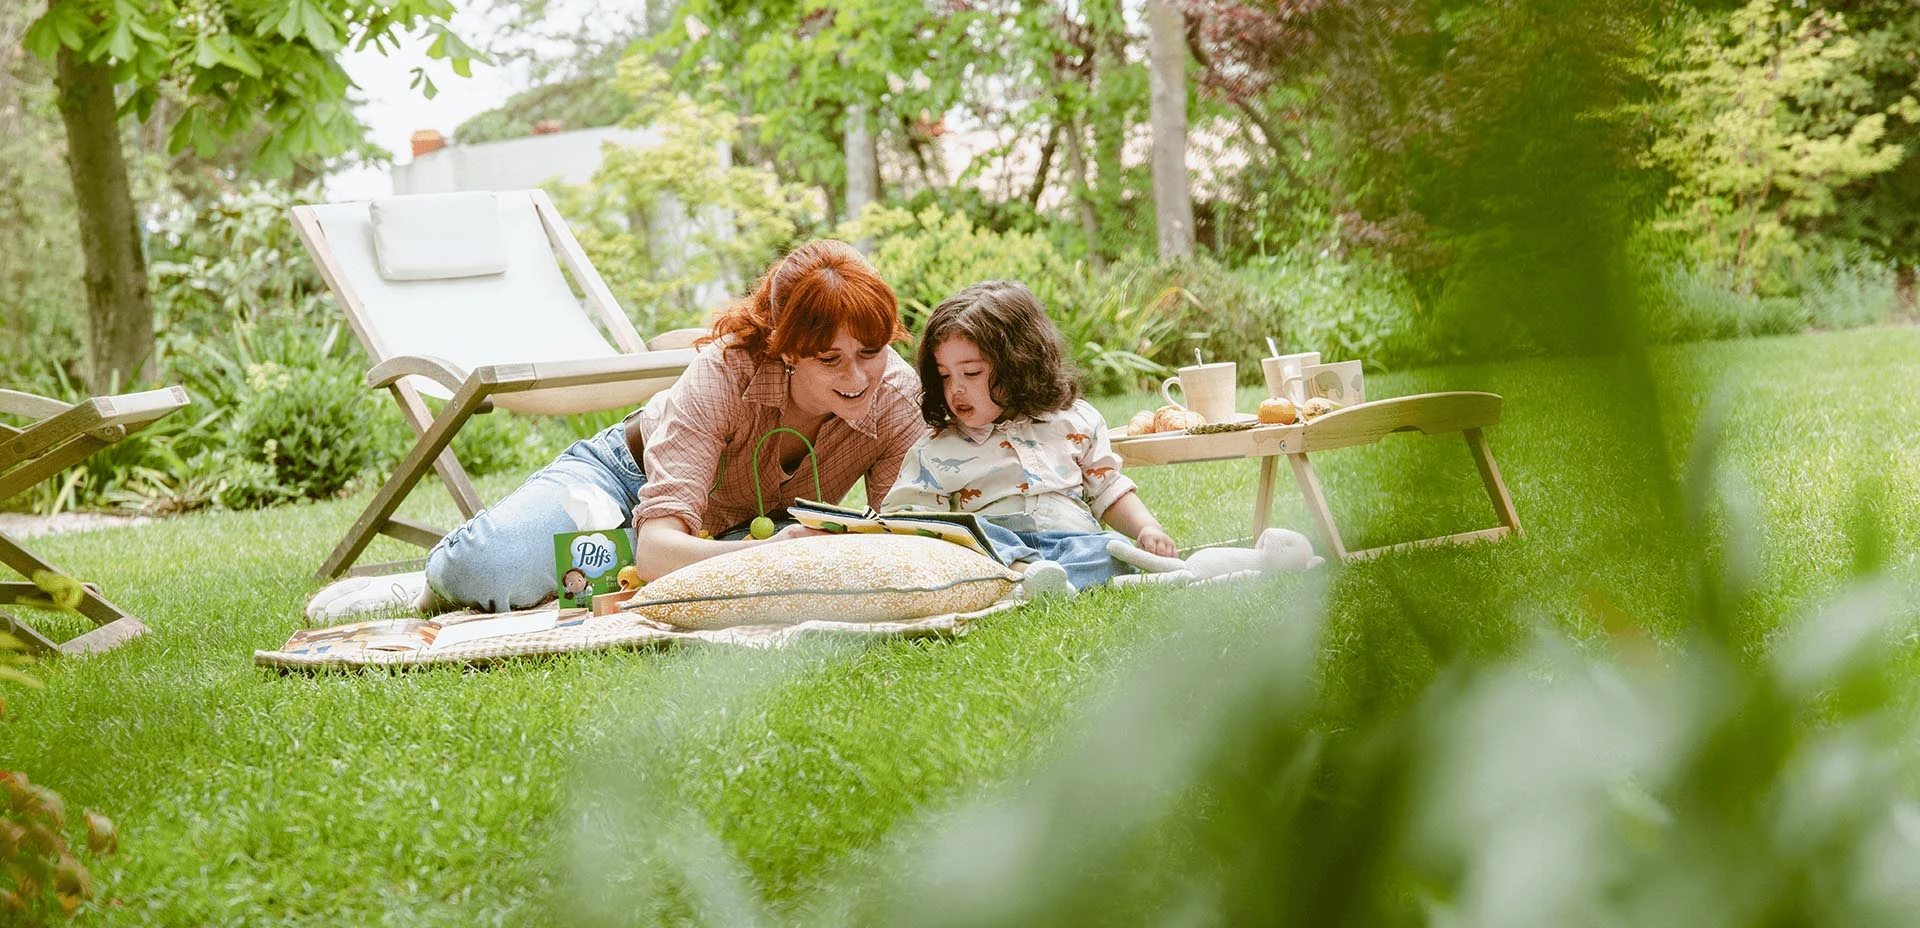 Anne ve kızı bahçe katında oturup kitap okuyorlar.